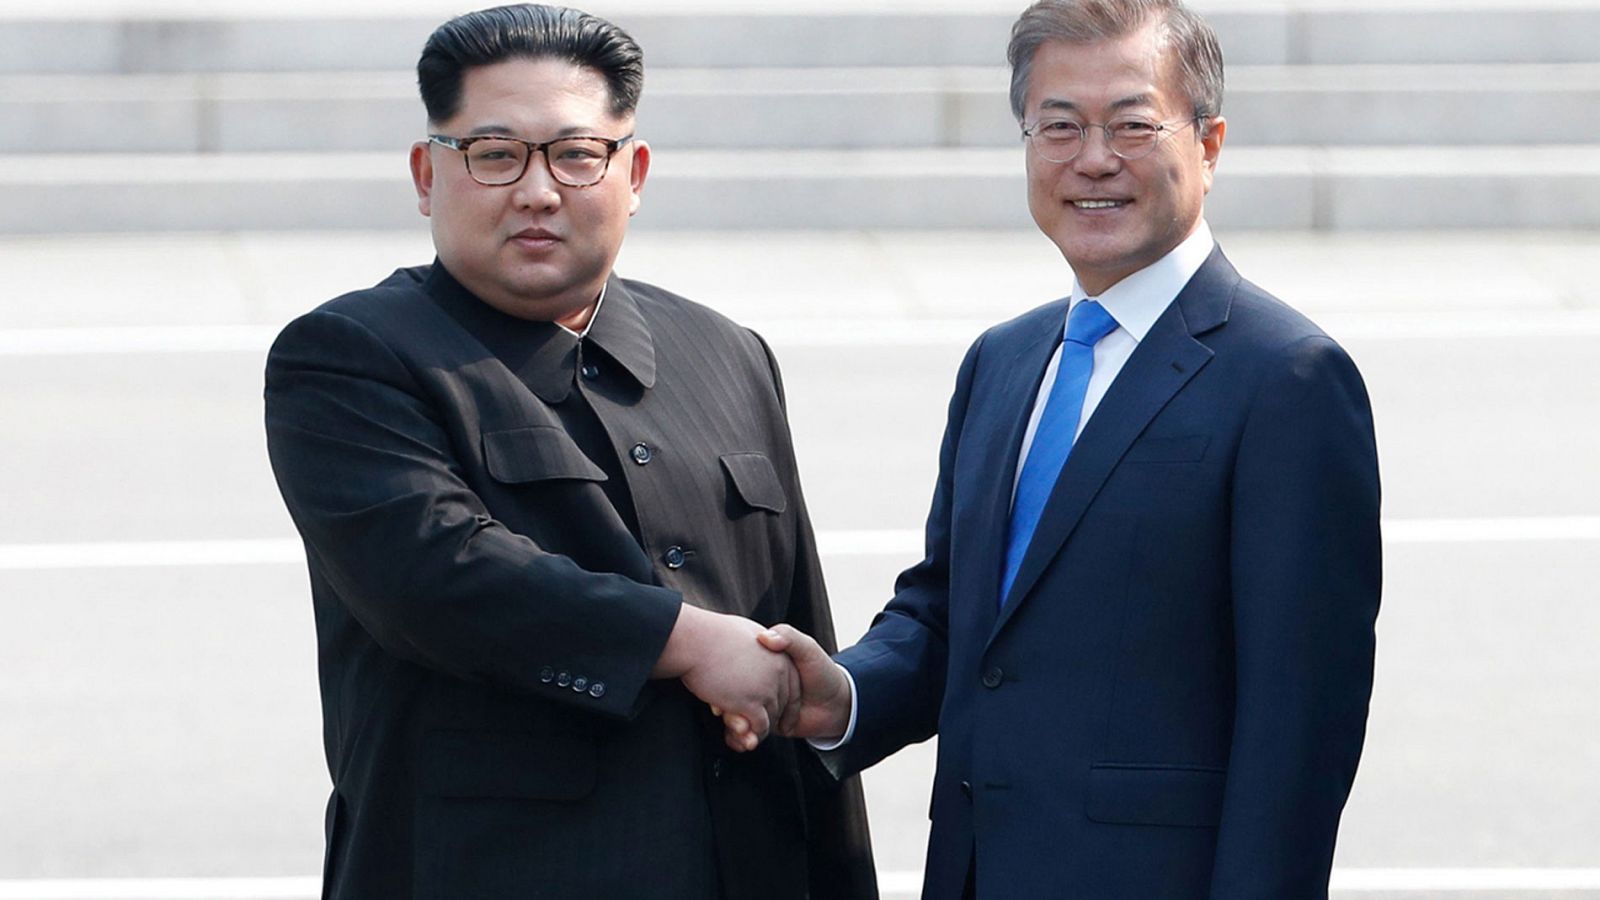 Cumbre intercoreana | Las dos Coreas celebran histórica cumbre con compromiso de conseguir la paz